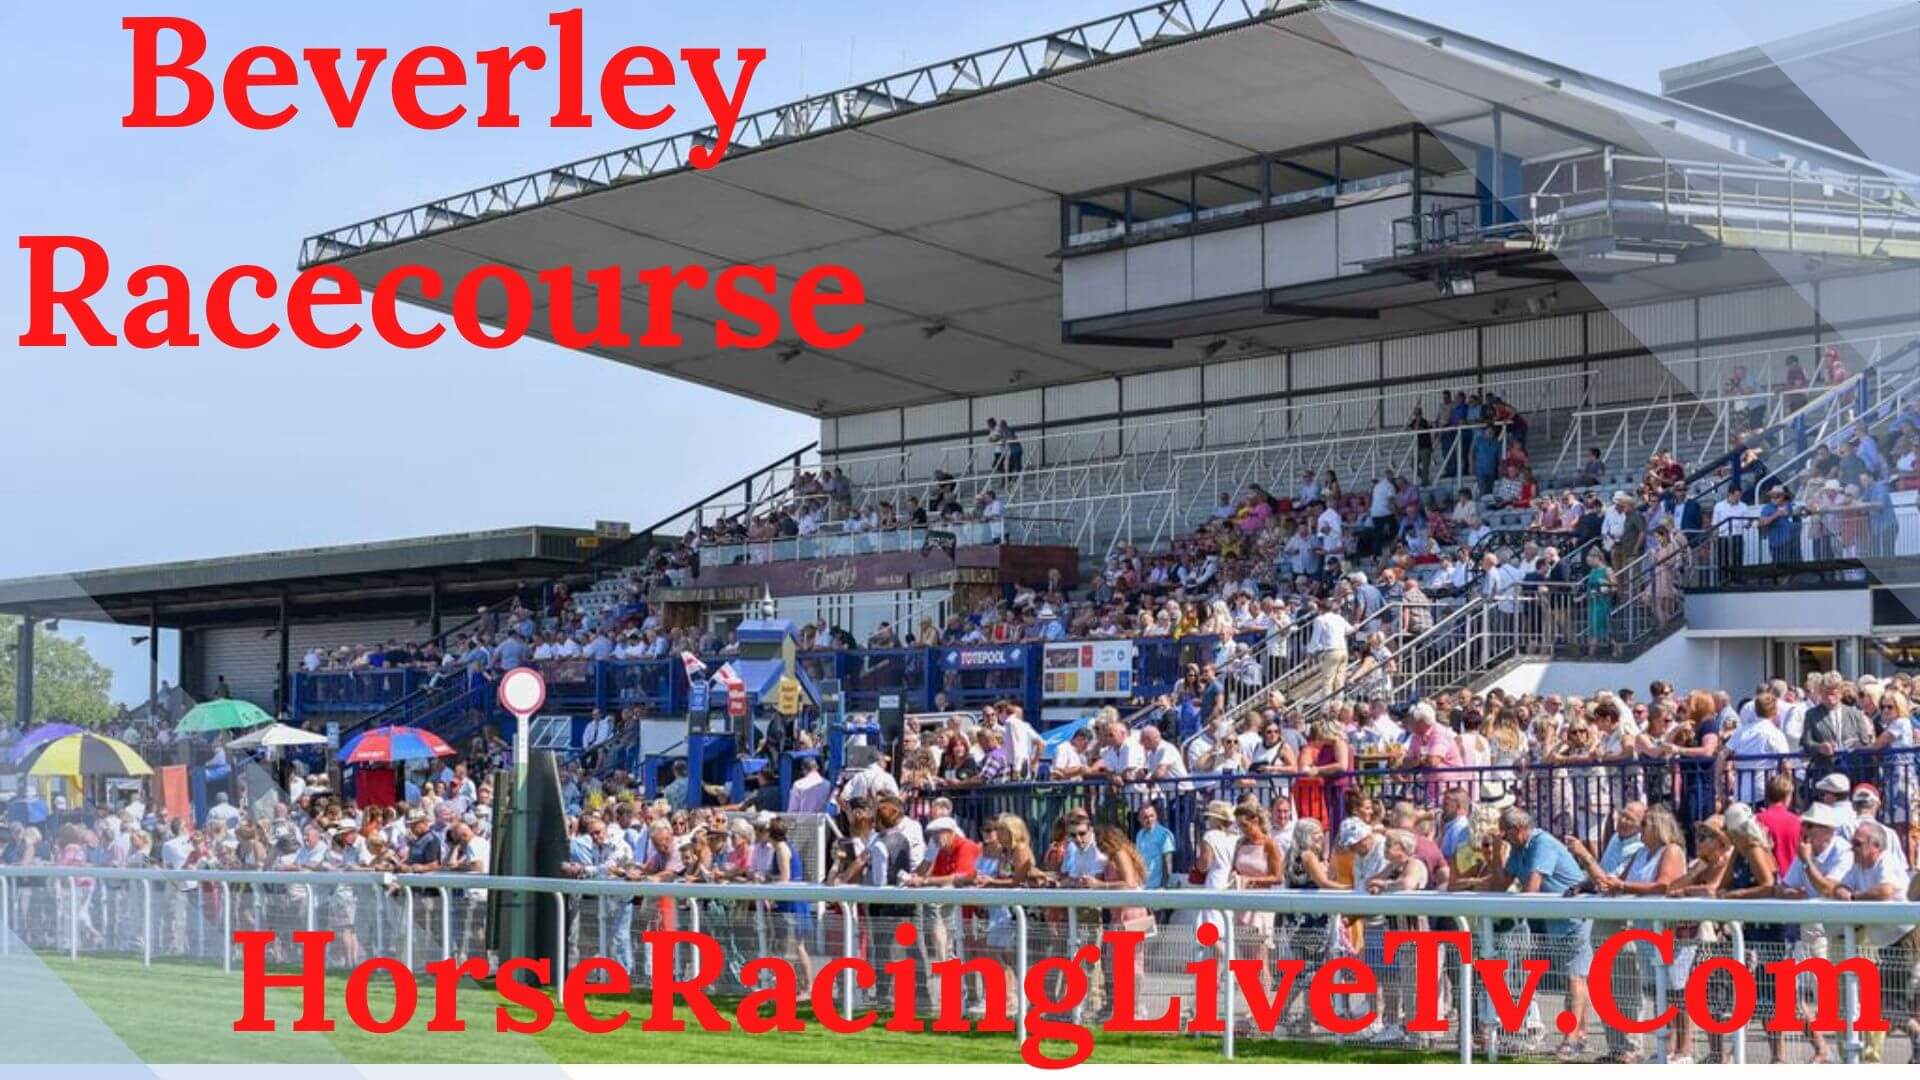 Beverley Racing TV on Channel 426 Handicap 5 20200611